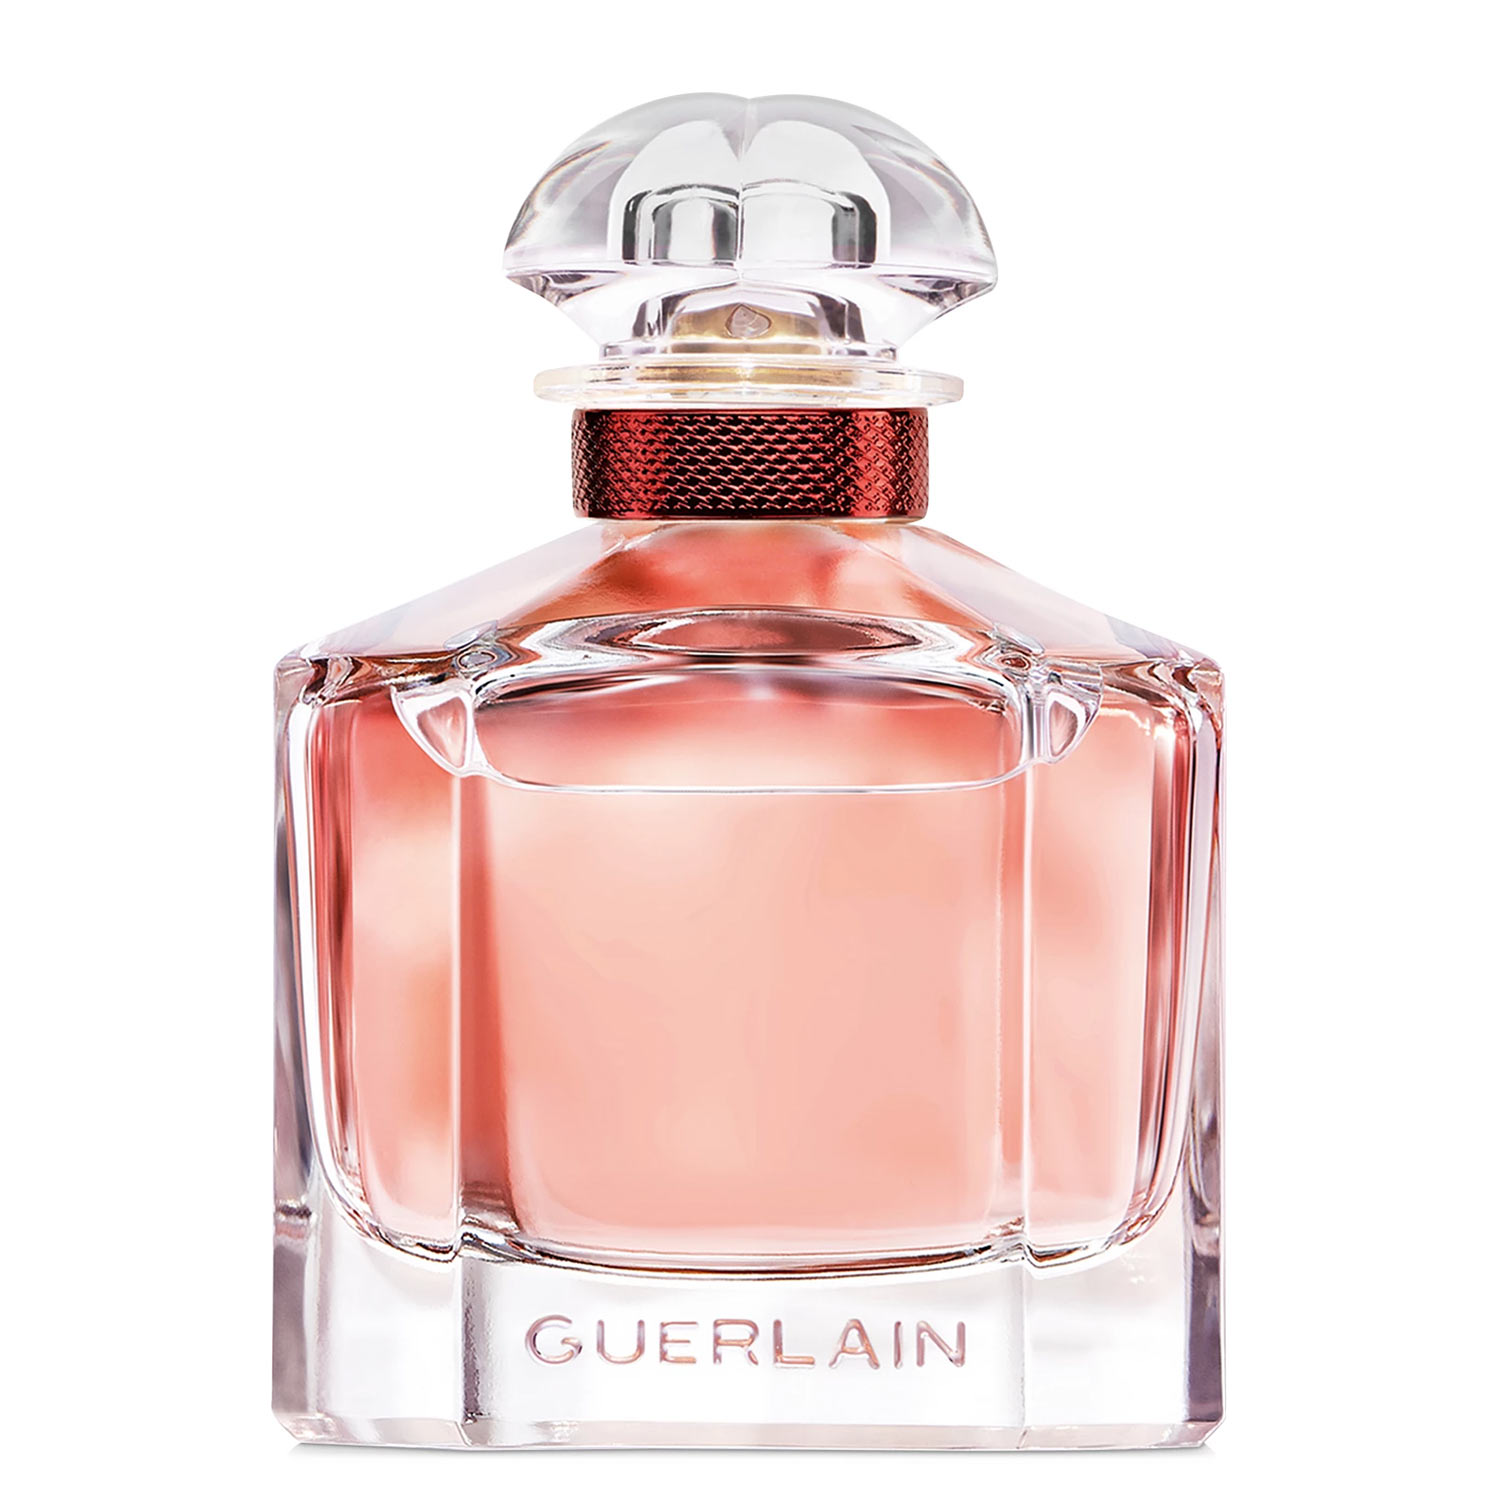 Mon Guerlain Bloom of Rose Eau de Parfum Guerlain Image